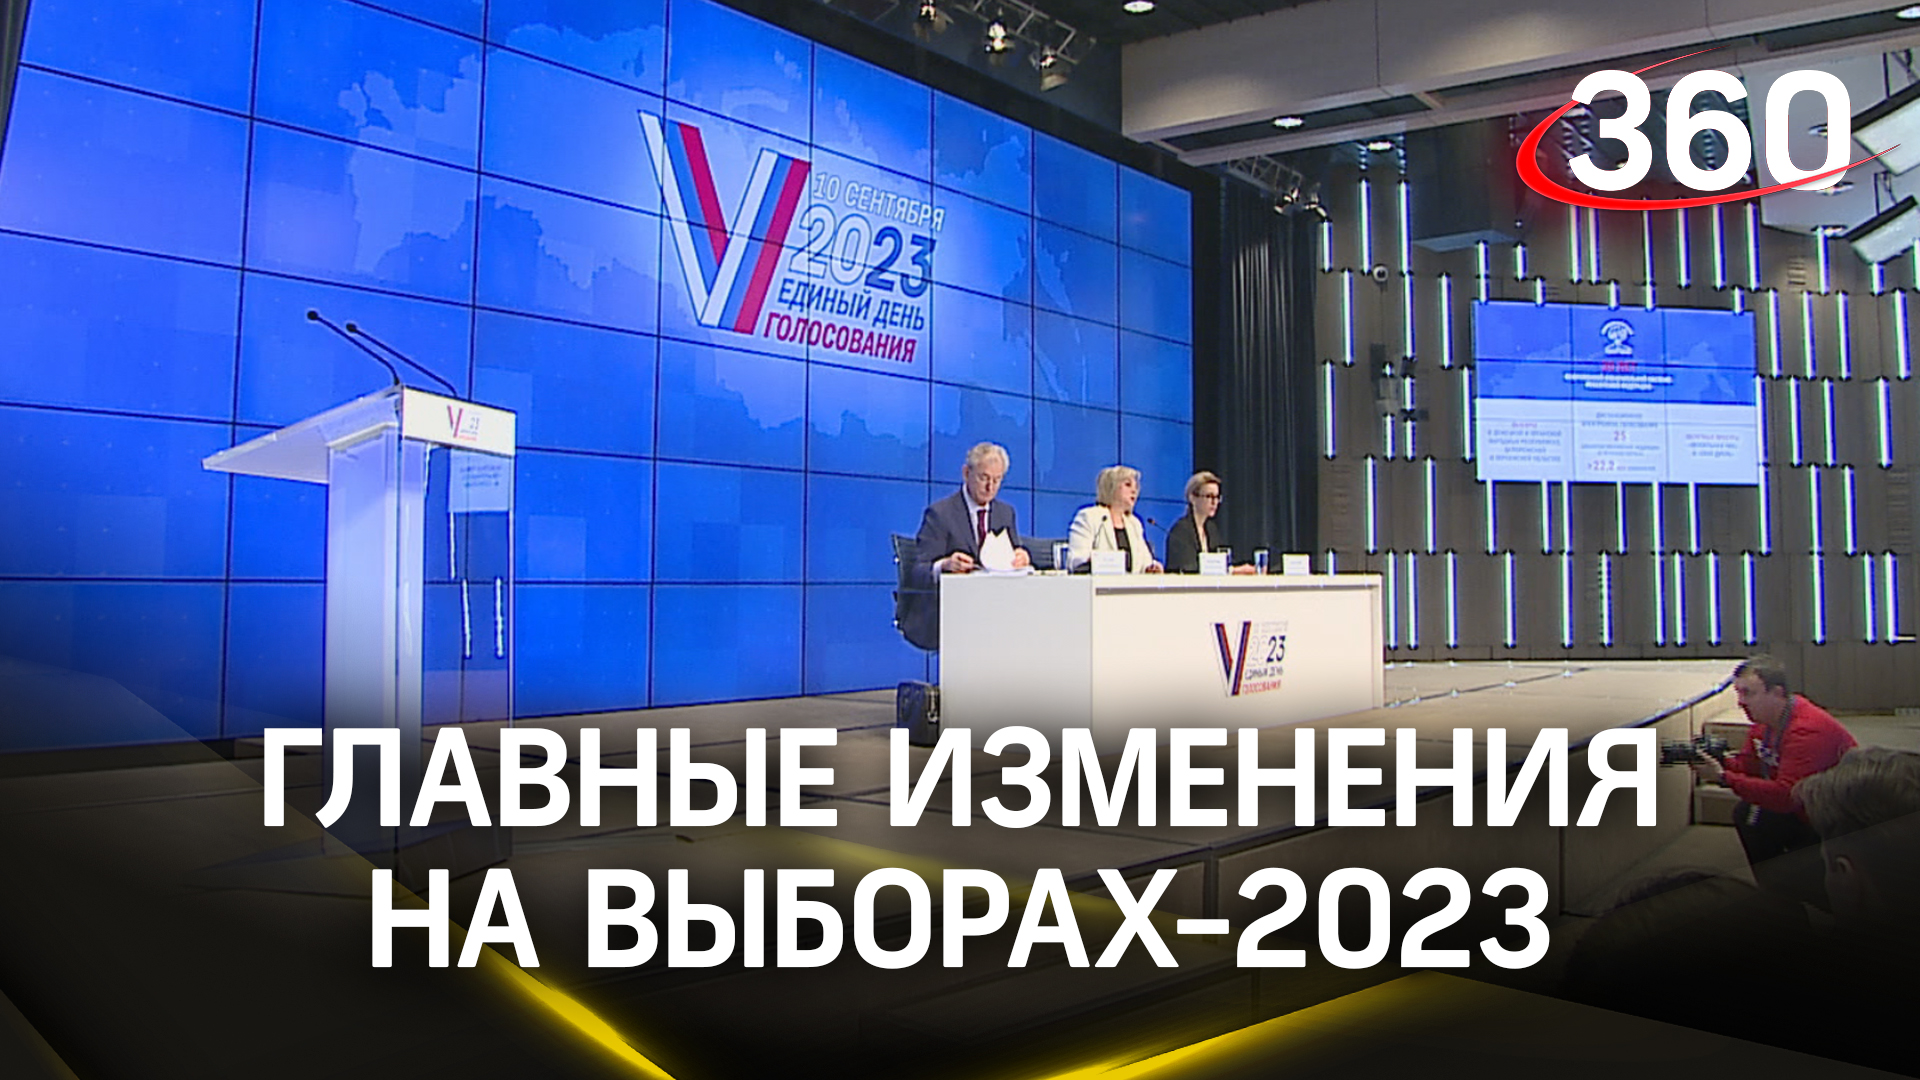 Дистанционное голосование, атаки из-за рубежа, выборы в новых регионах РФ - доклад председателя ЦИК